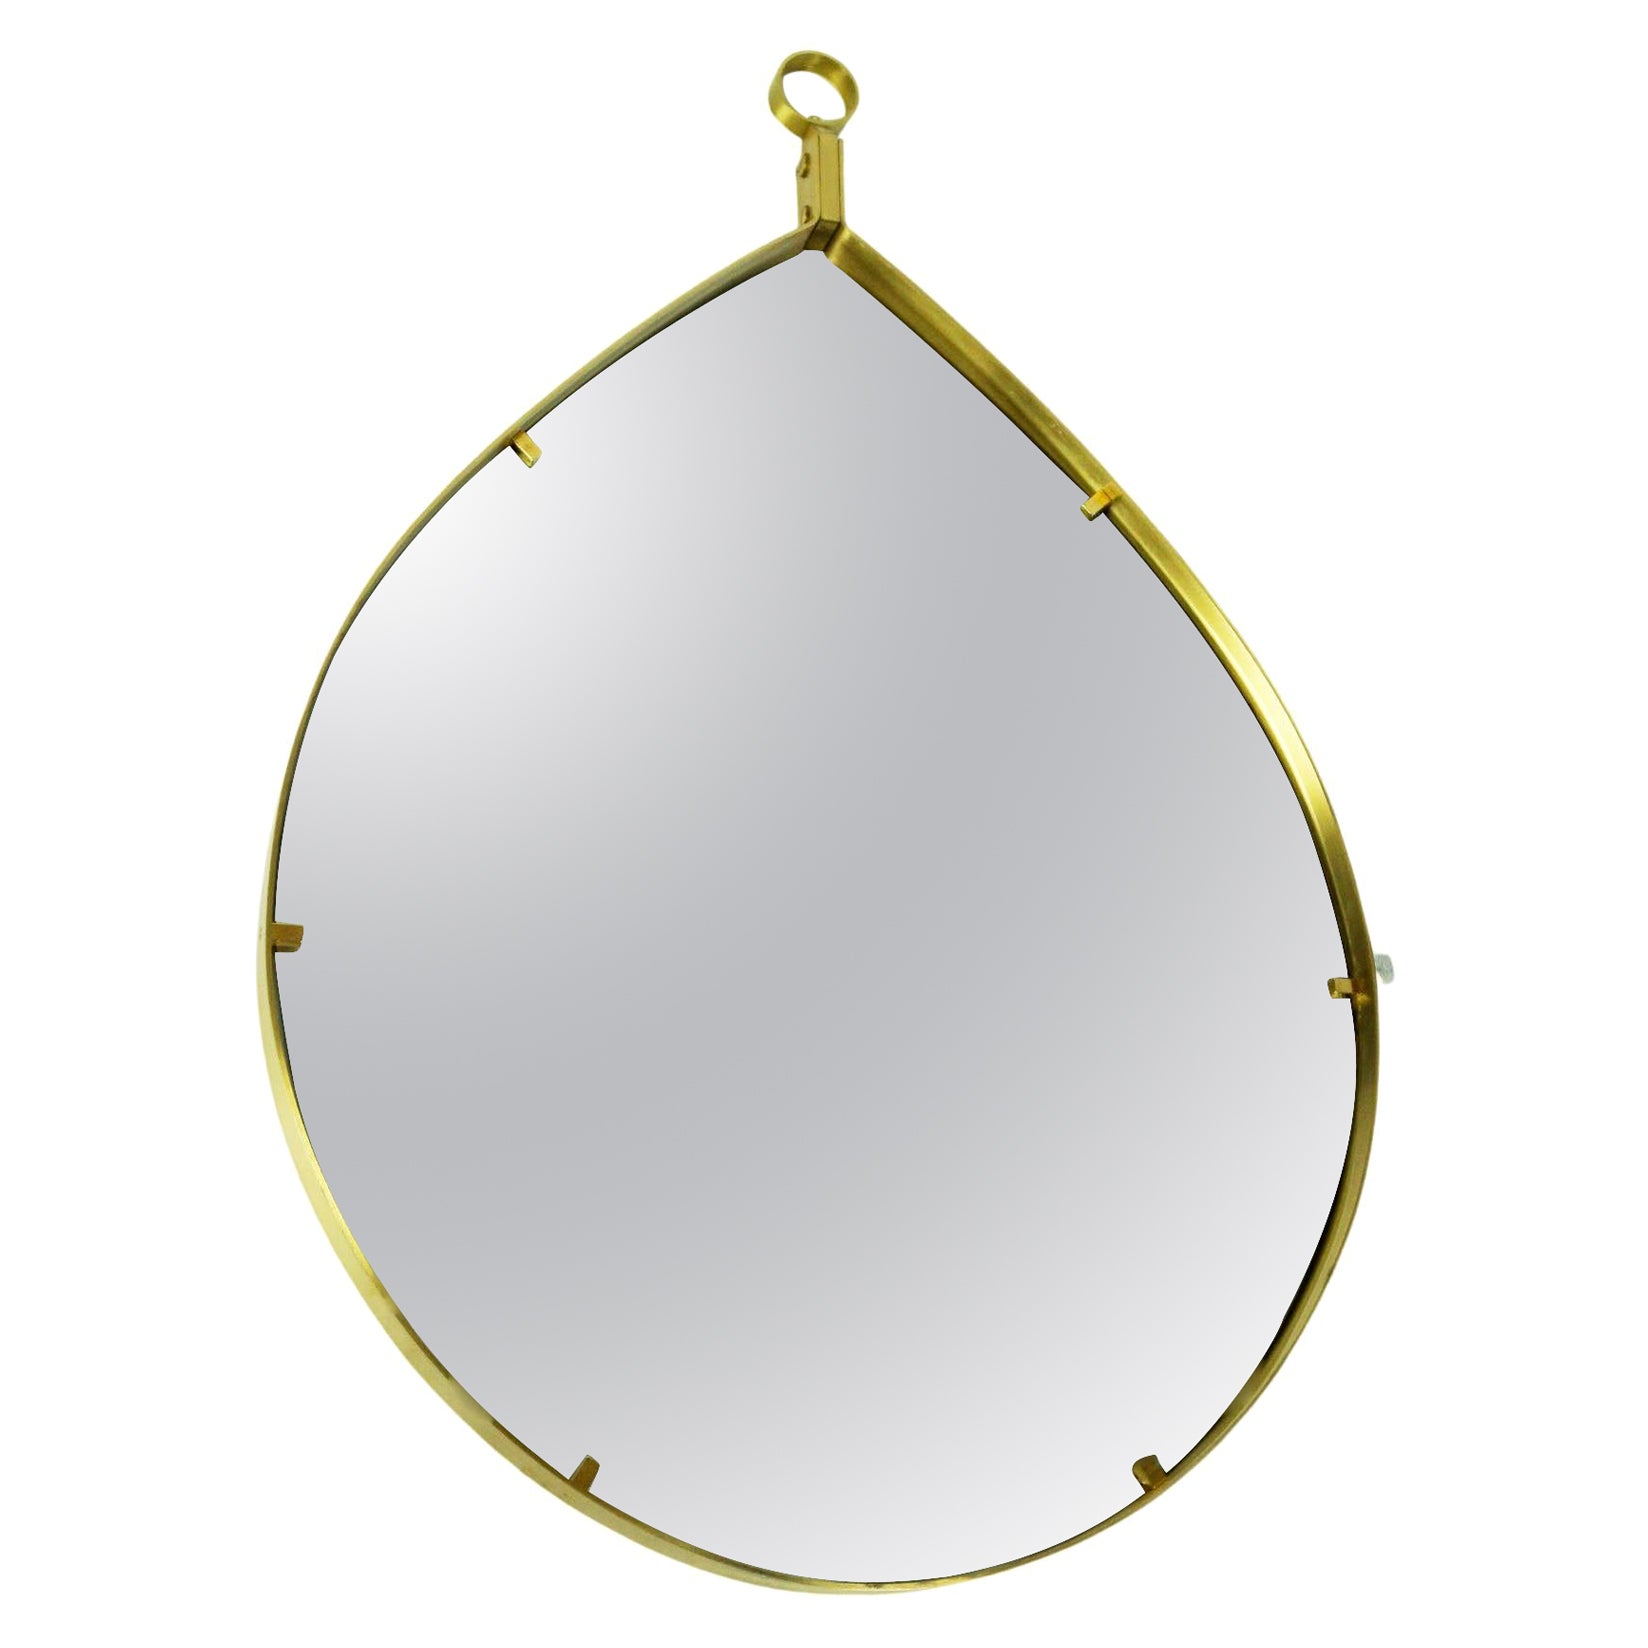 Italian Midcentury Brass Teardrop Wall Mirror  in the Style of Fontana Arte For Sale